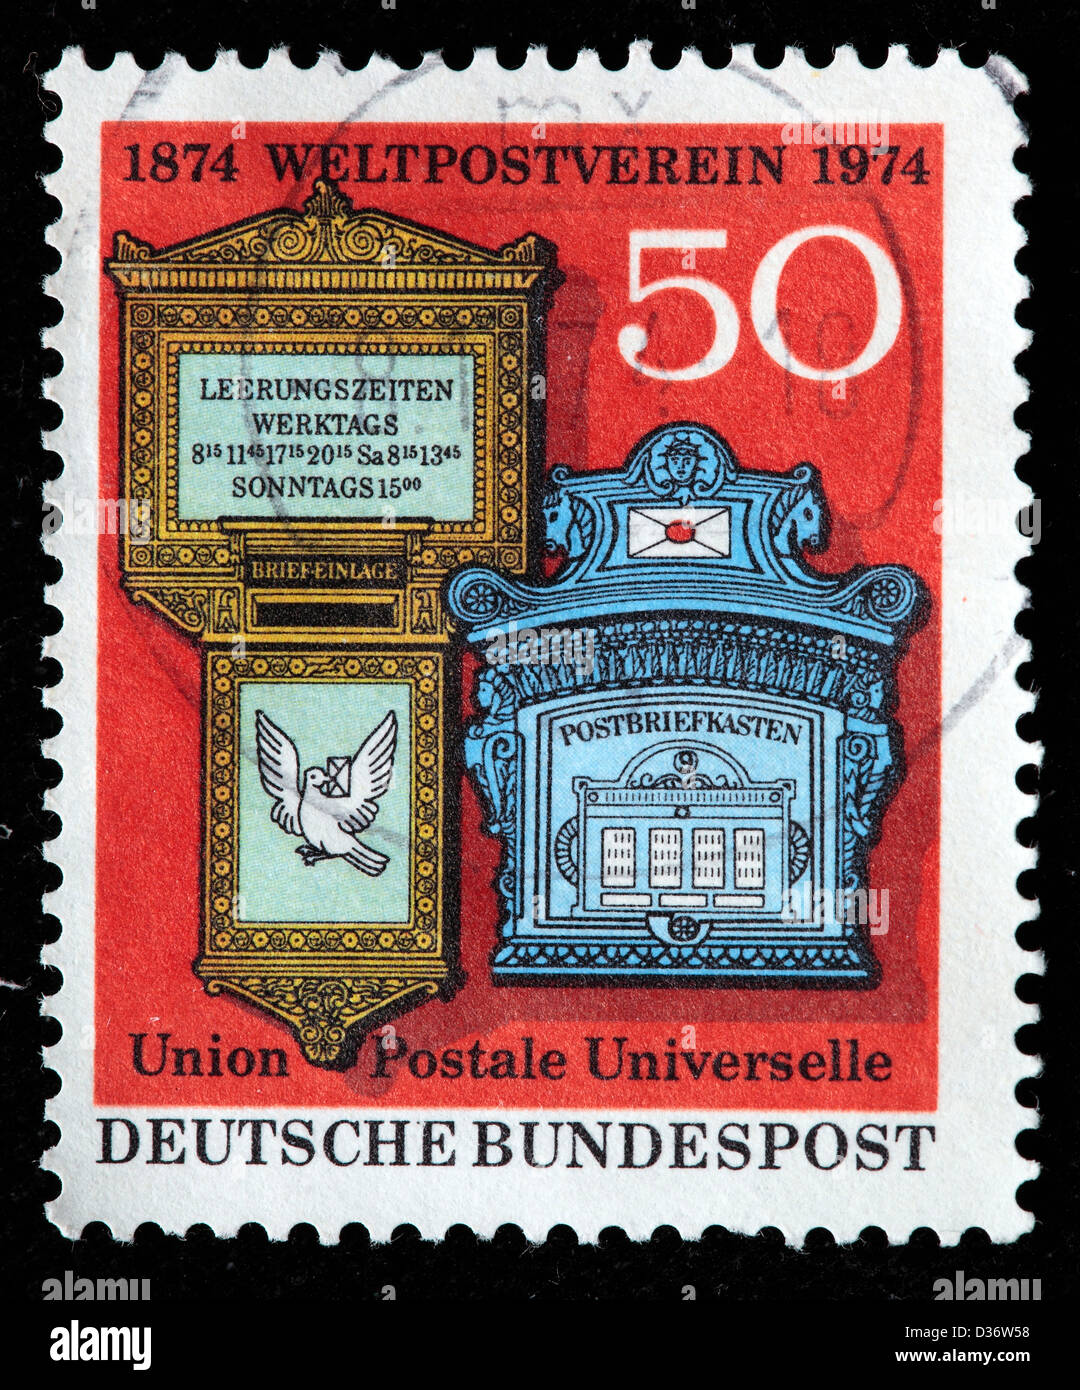 19e siècle allemand et suisse Mail Boxes, timbre-poste, Allemagne, 1974 Banque D'Images